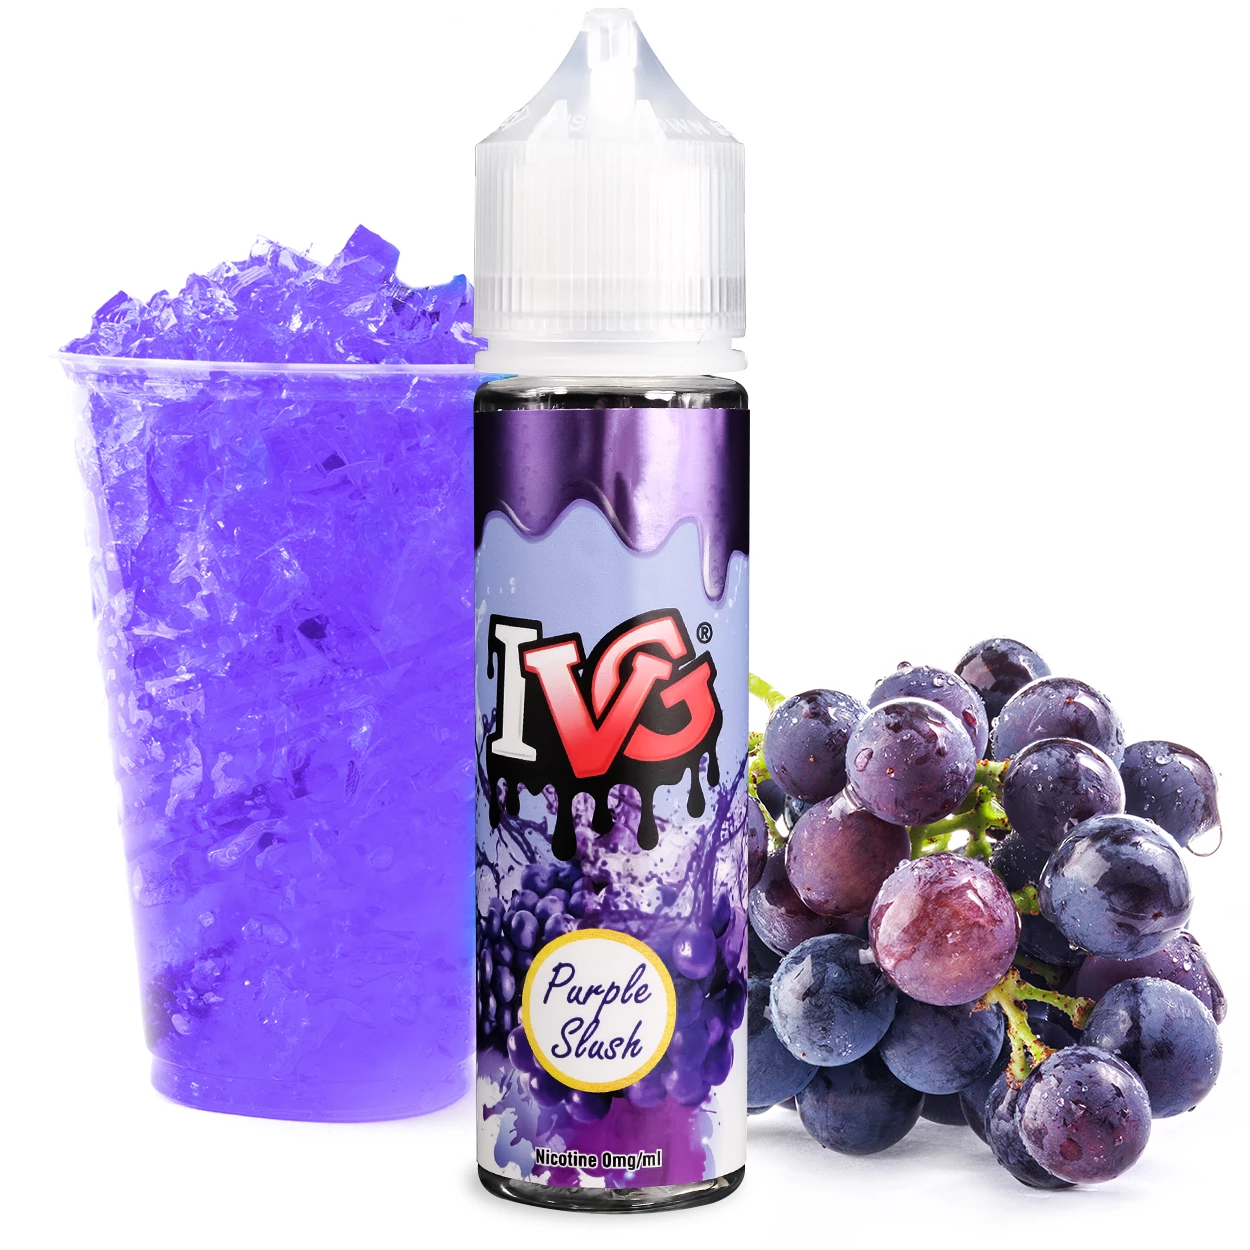 Purple-Slush-IVG